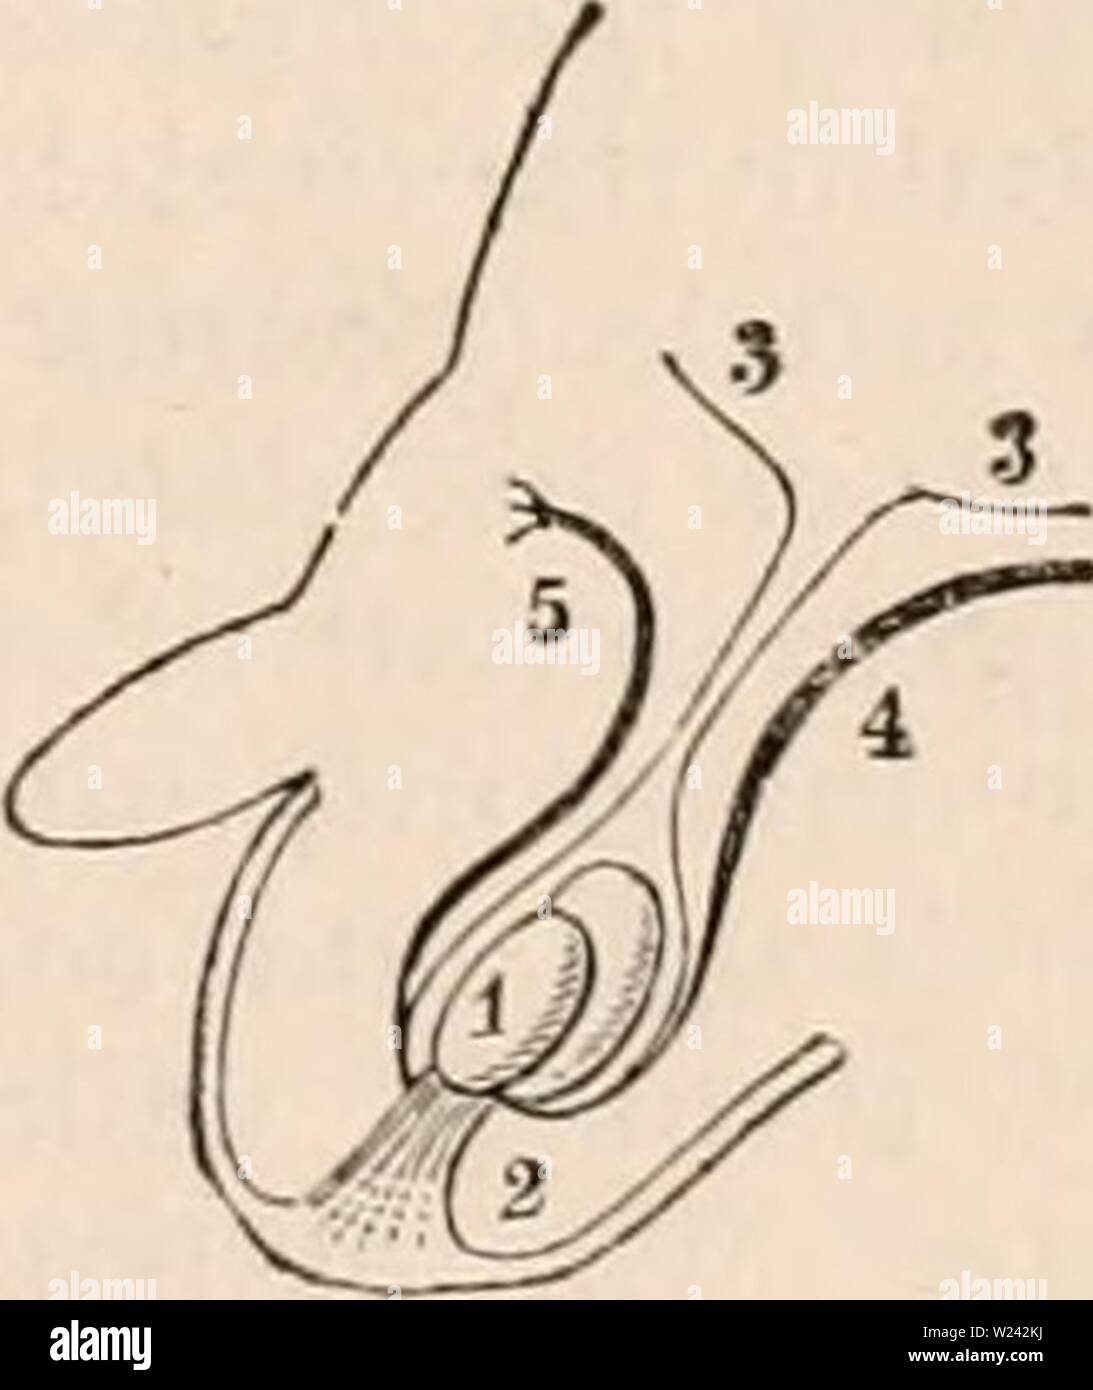 Imagen de archivo de la página 198 de la cyclopaedia de anatomía y. La cyclopaedia de anatomía y fisiología cyclopdiaofana0402todd Año: 1849 Diagrama del gubernaculum y testículo previo a su ascendencia. 1, el riñón; 2, el testículo; 3, 3, el peritoneo ' 4, vasos deferentes pasando hacia abajo en la pelvis por el lado de la vejiga; 5, la vejiga; 6, el abdo- minal ring; 7, 7, y 8 del ligamento de Poupart púbica, por- ción de los cremaster; 9, fibras del cremaster derivadas del ligamento de Poupart; 10, parte de la guberuaculuui adjunta a la parte inferior de la scro- tum. Entre la quinta y la sexta m Foto de stock